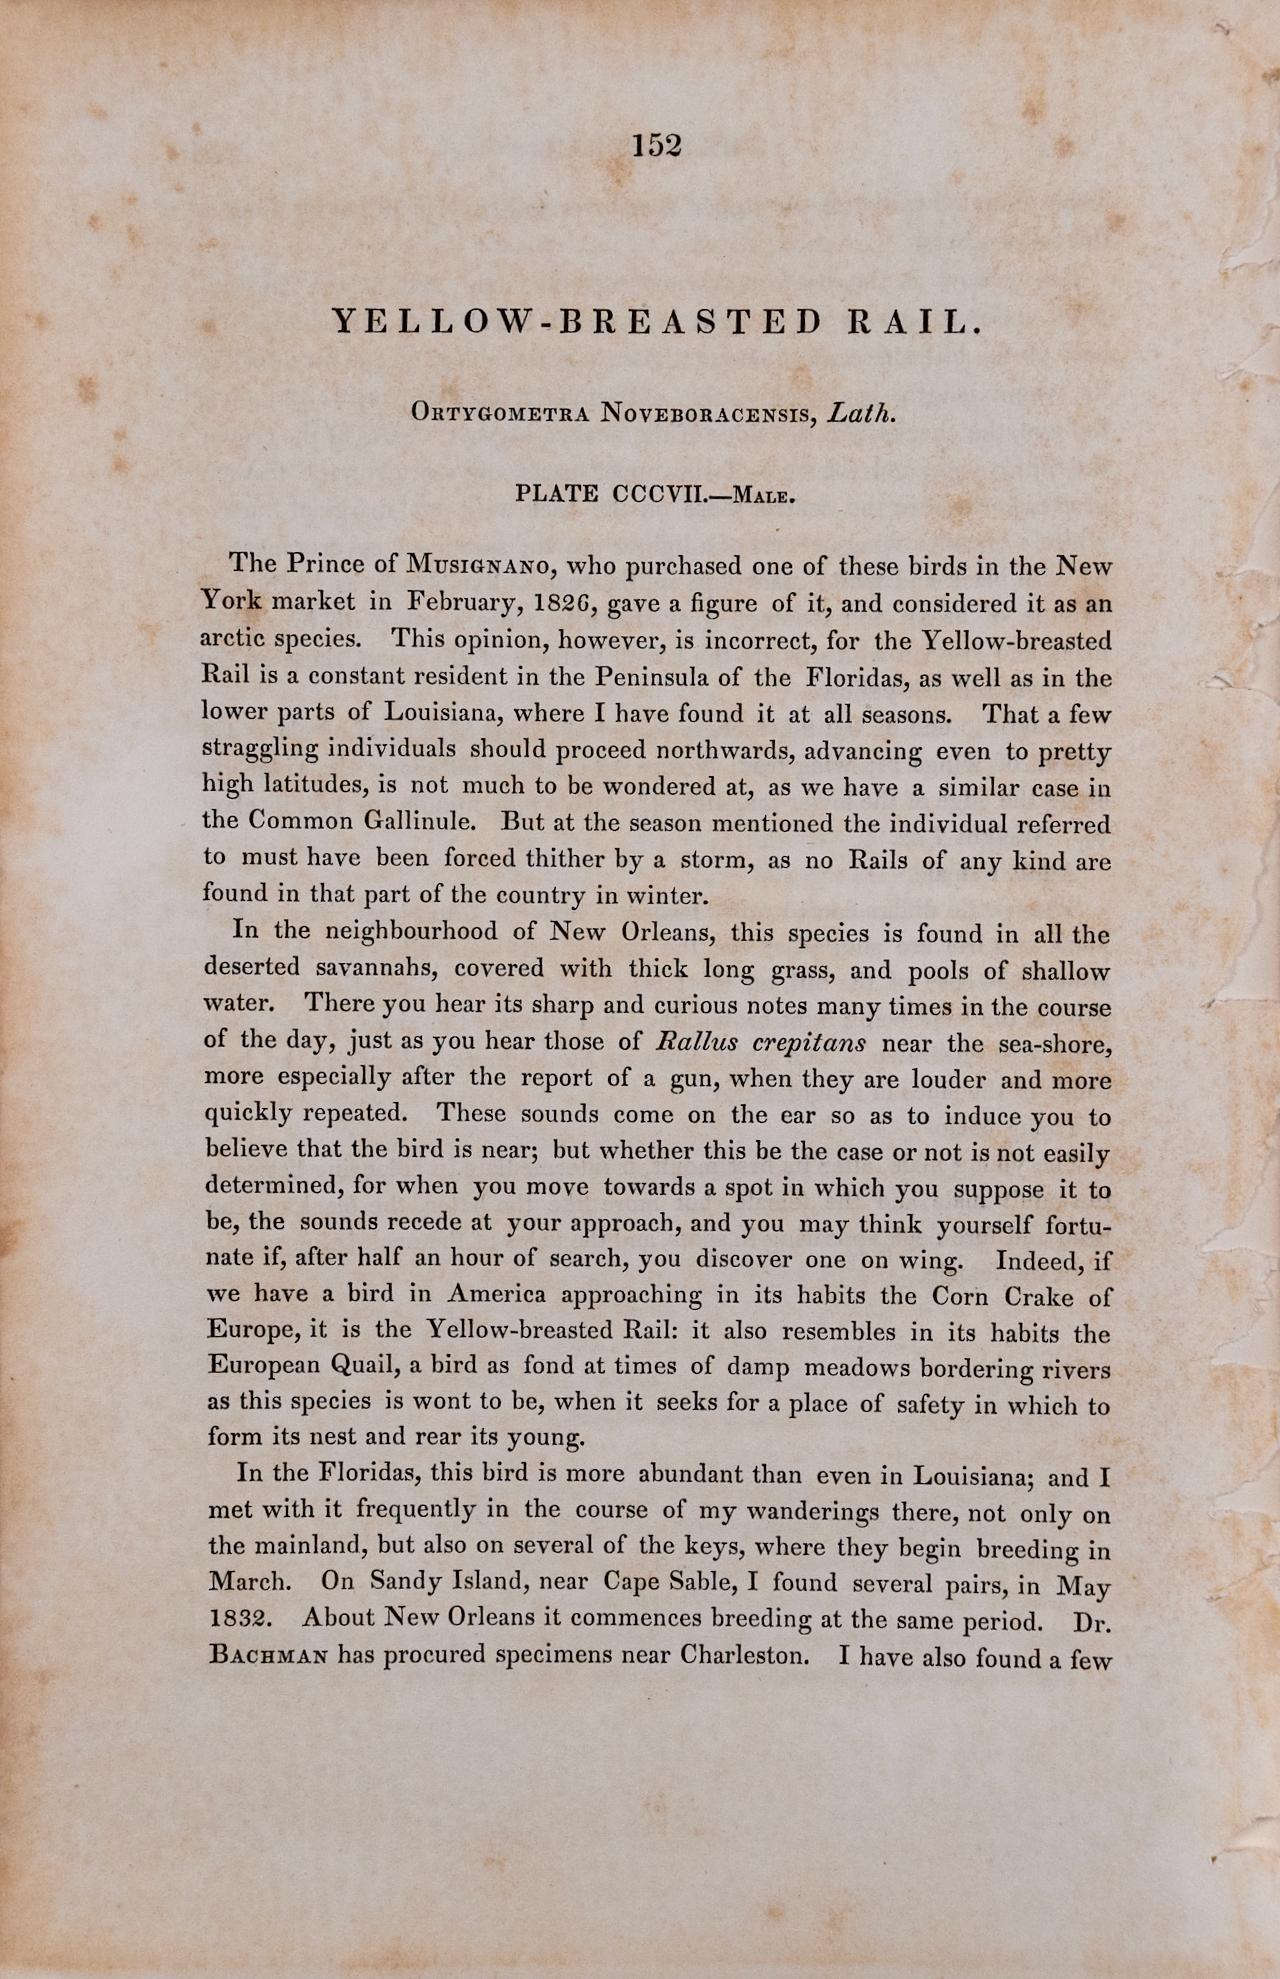 Dies ist ein Original 1. octavo Ausgabe John James Audubon handkolorierte Lithographie mit dem Titel 